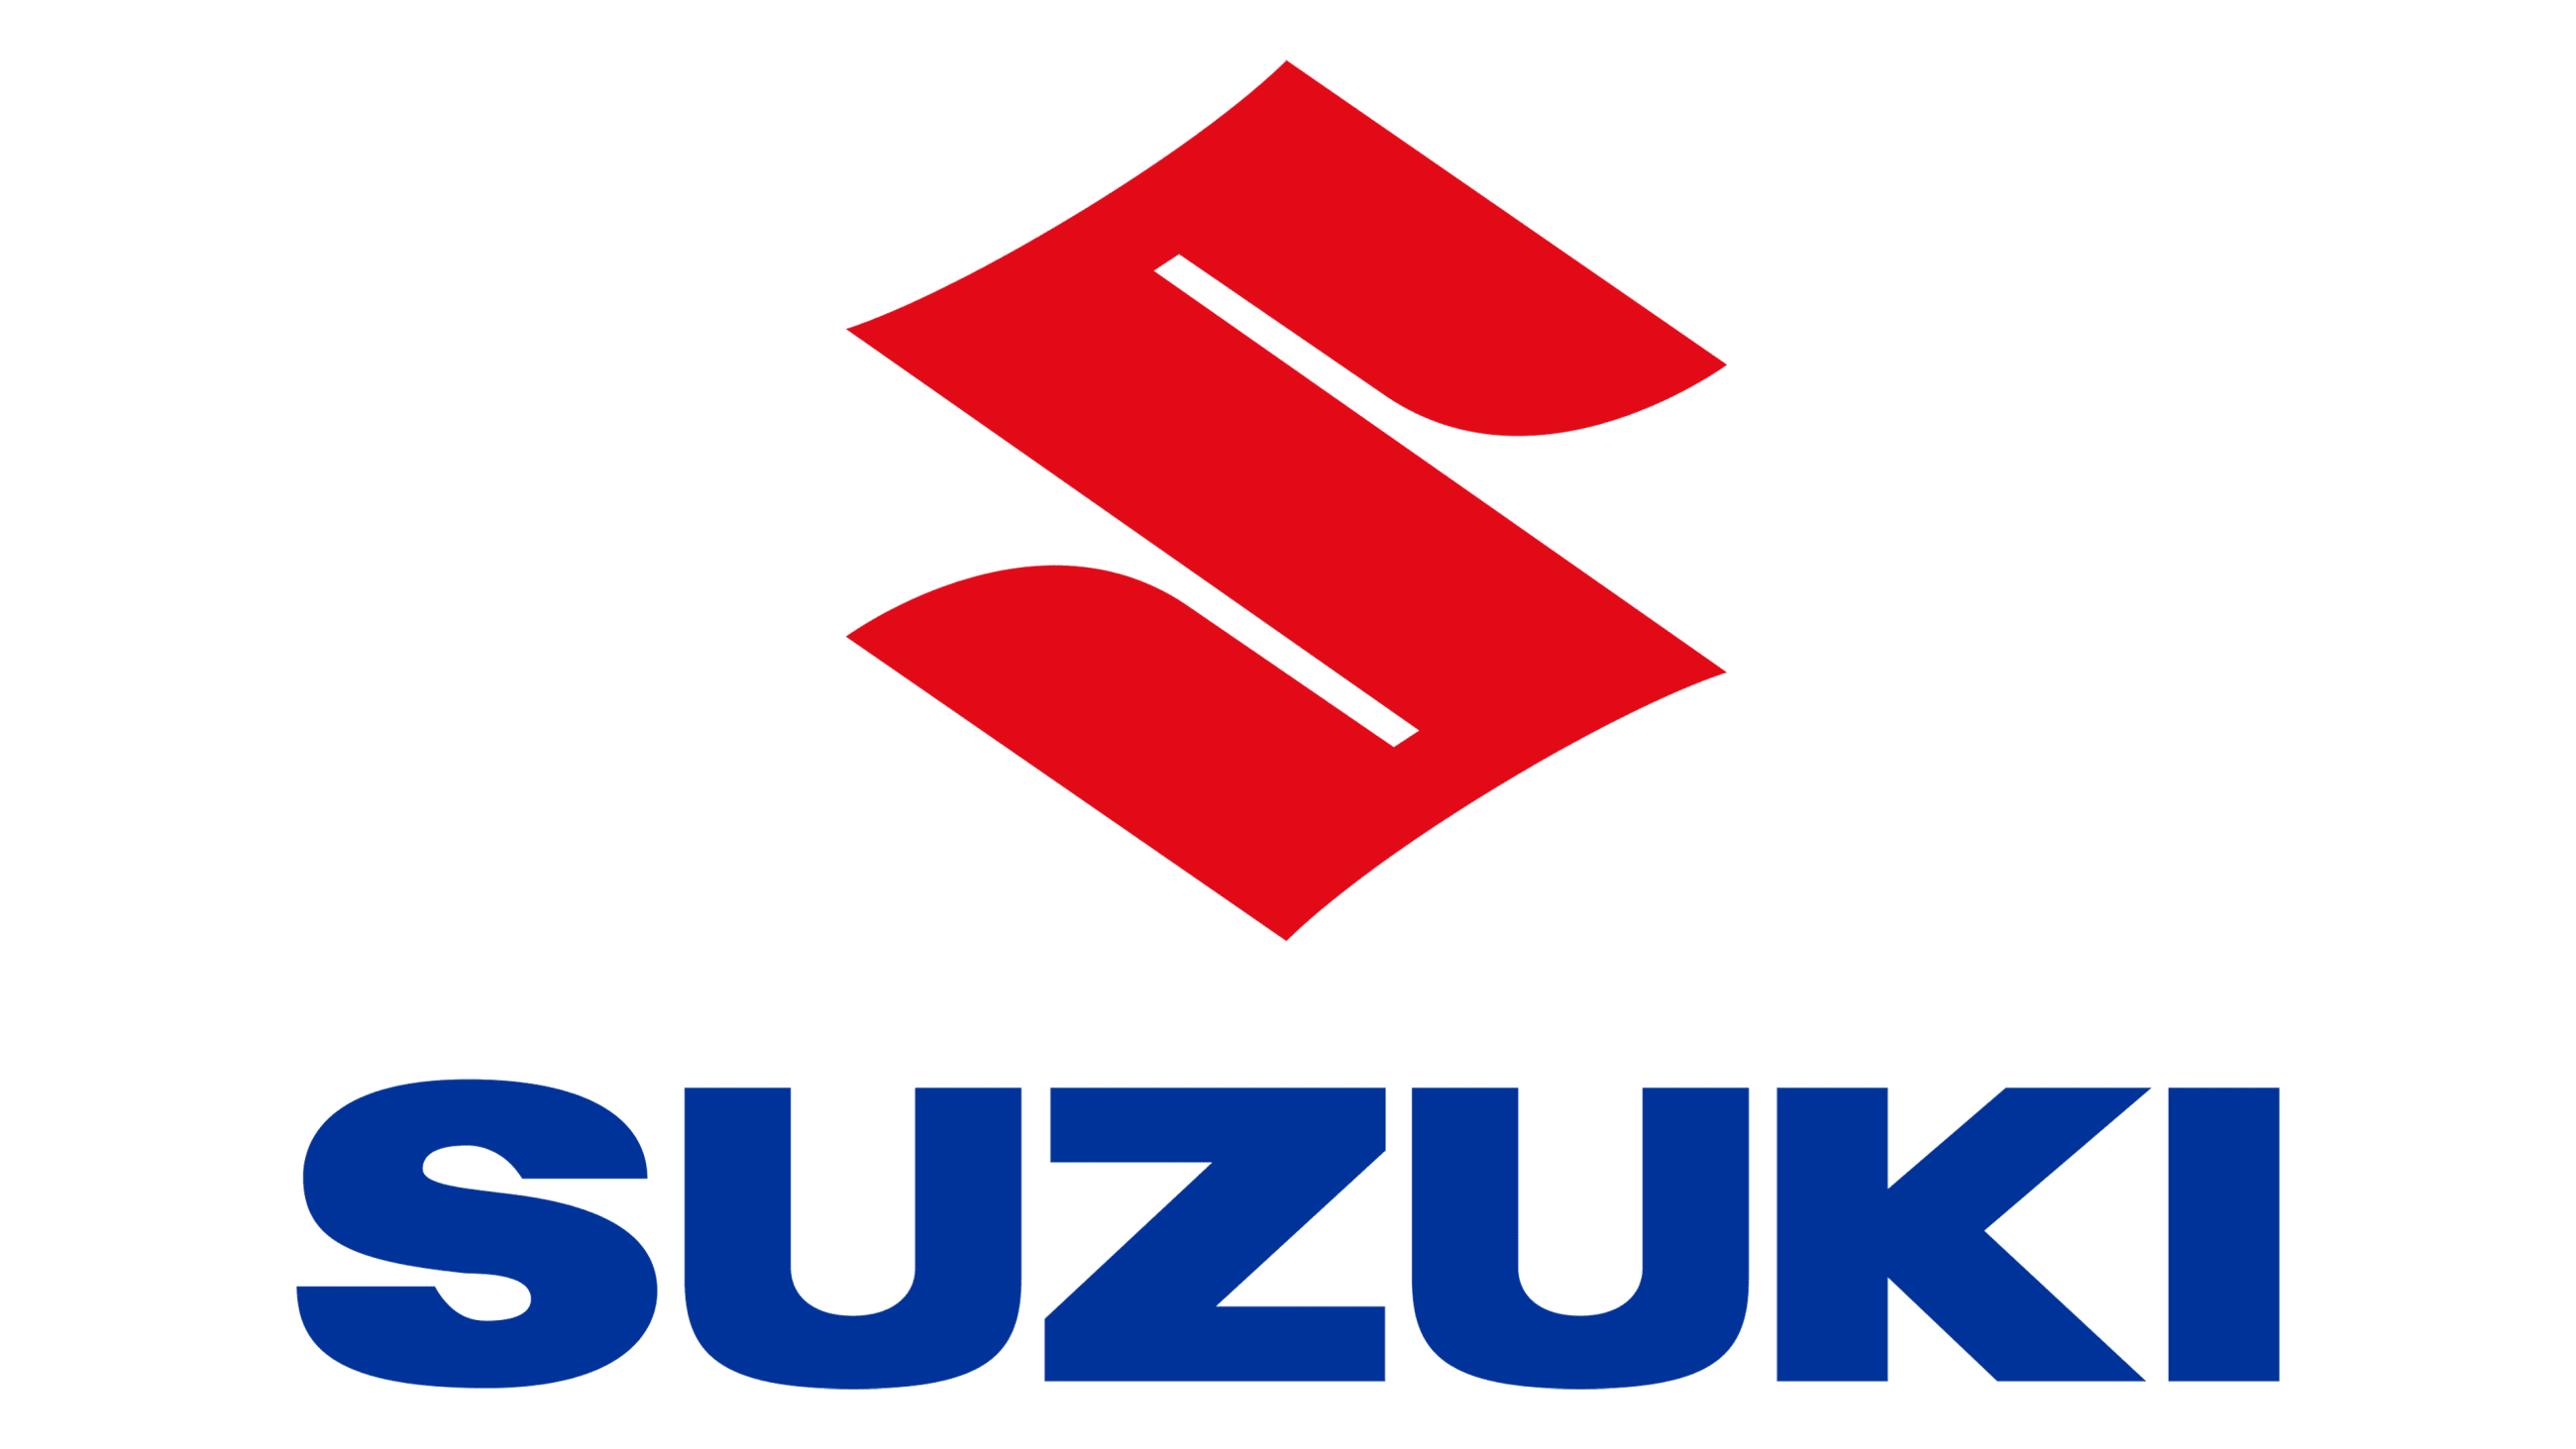 Suzuki Parts House